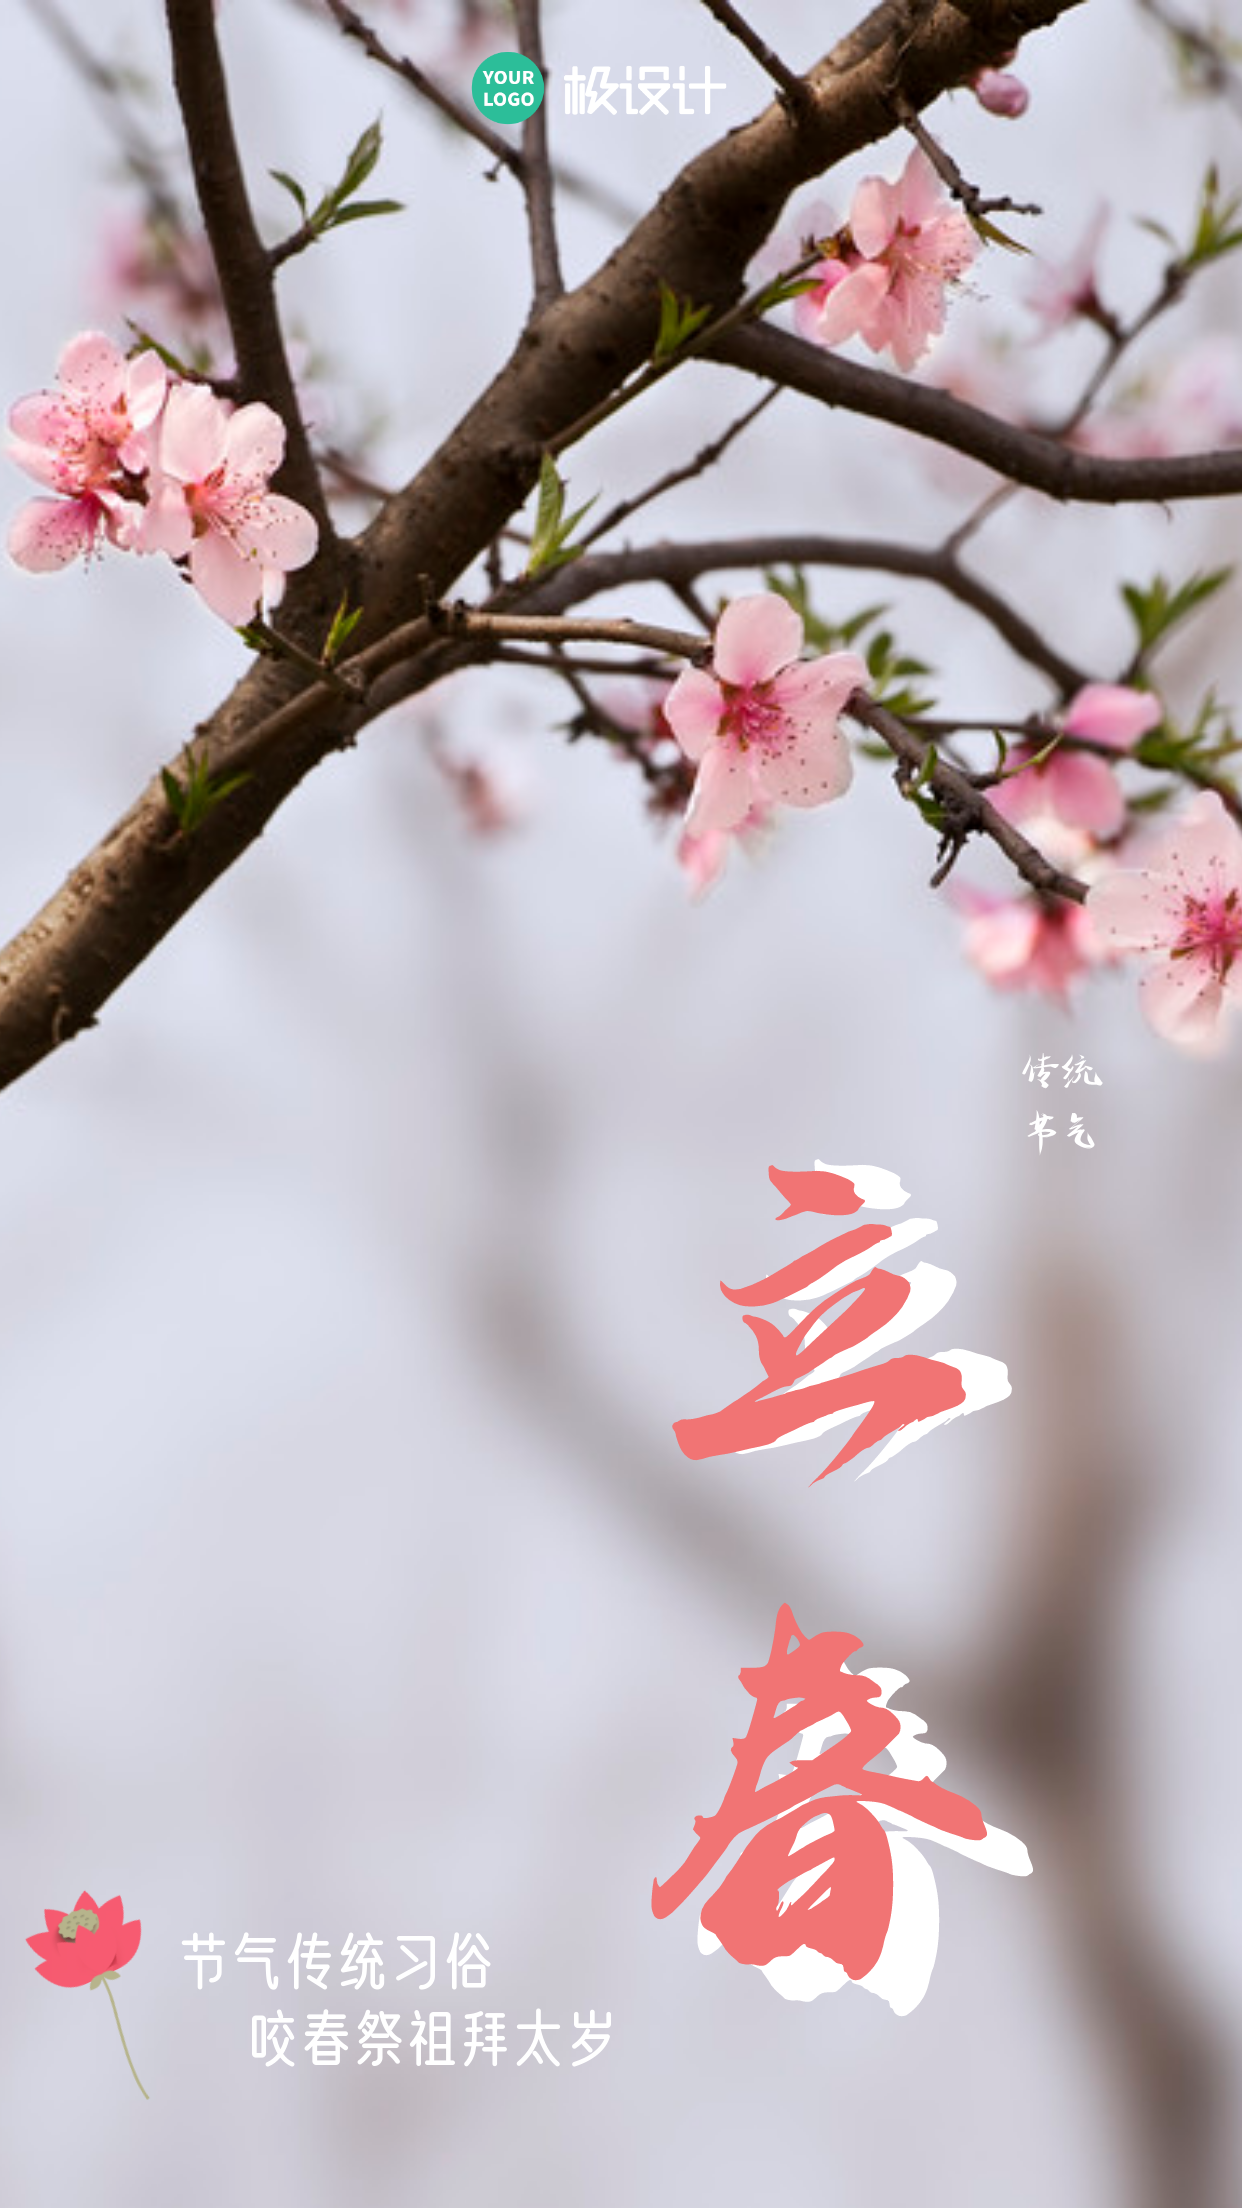 立春习俗宣传摄影图粉色手机海报